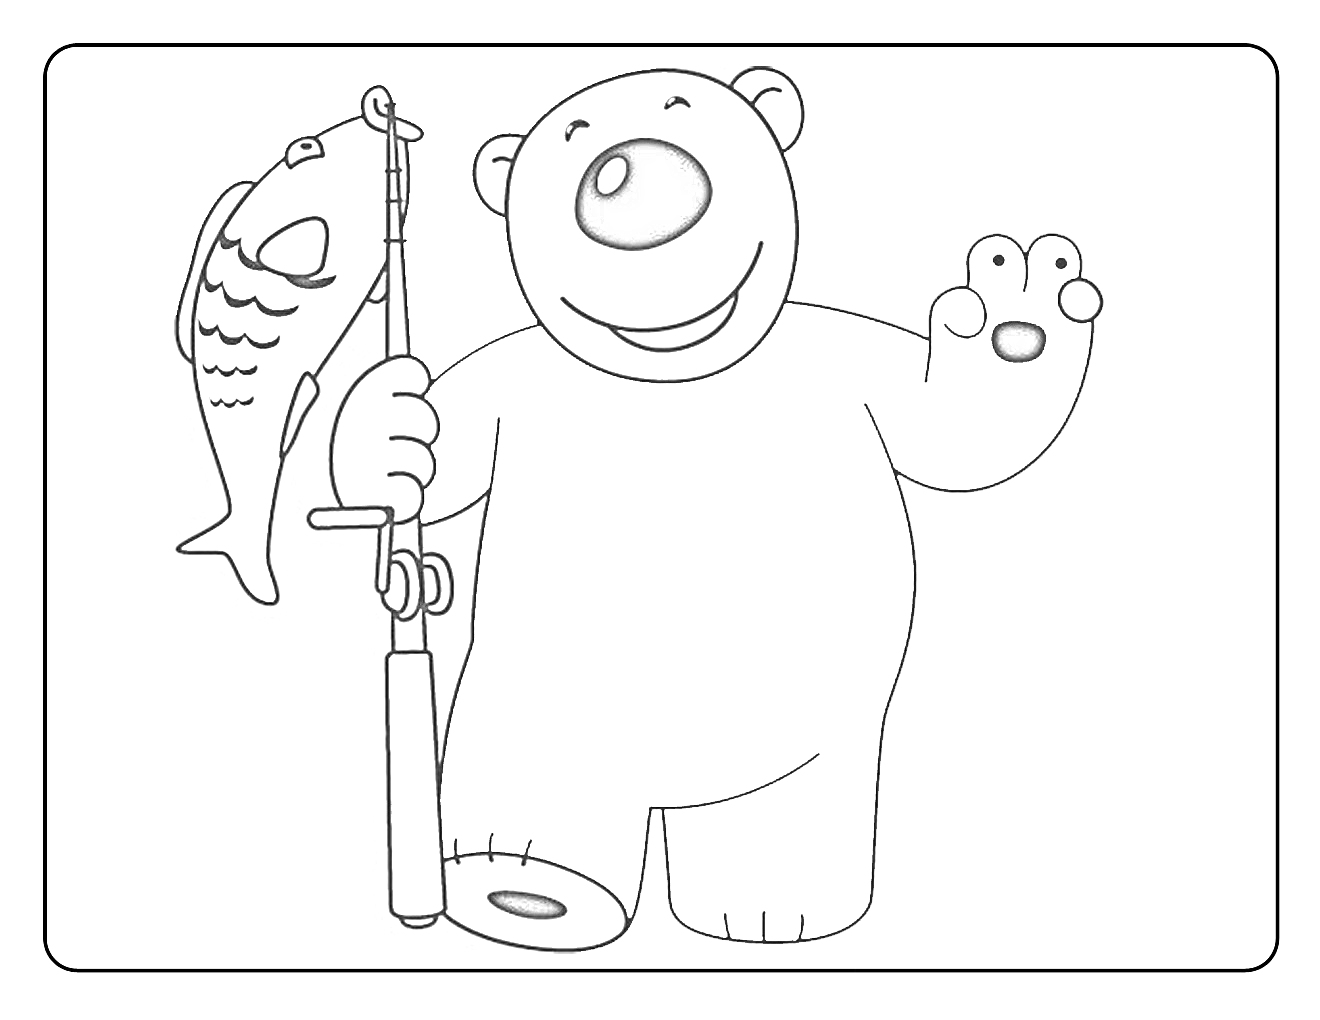 Белый медведь с удочкой и рыбой, персонаж из 